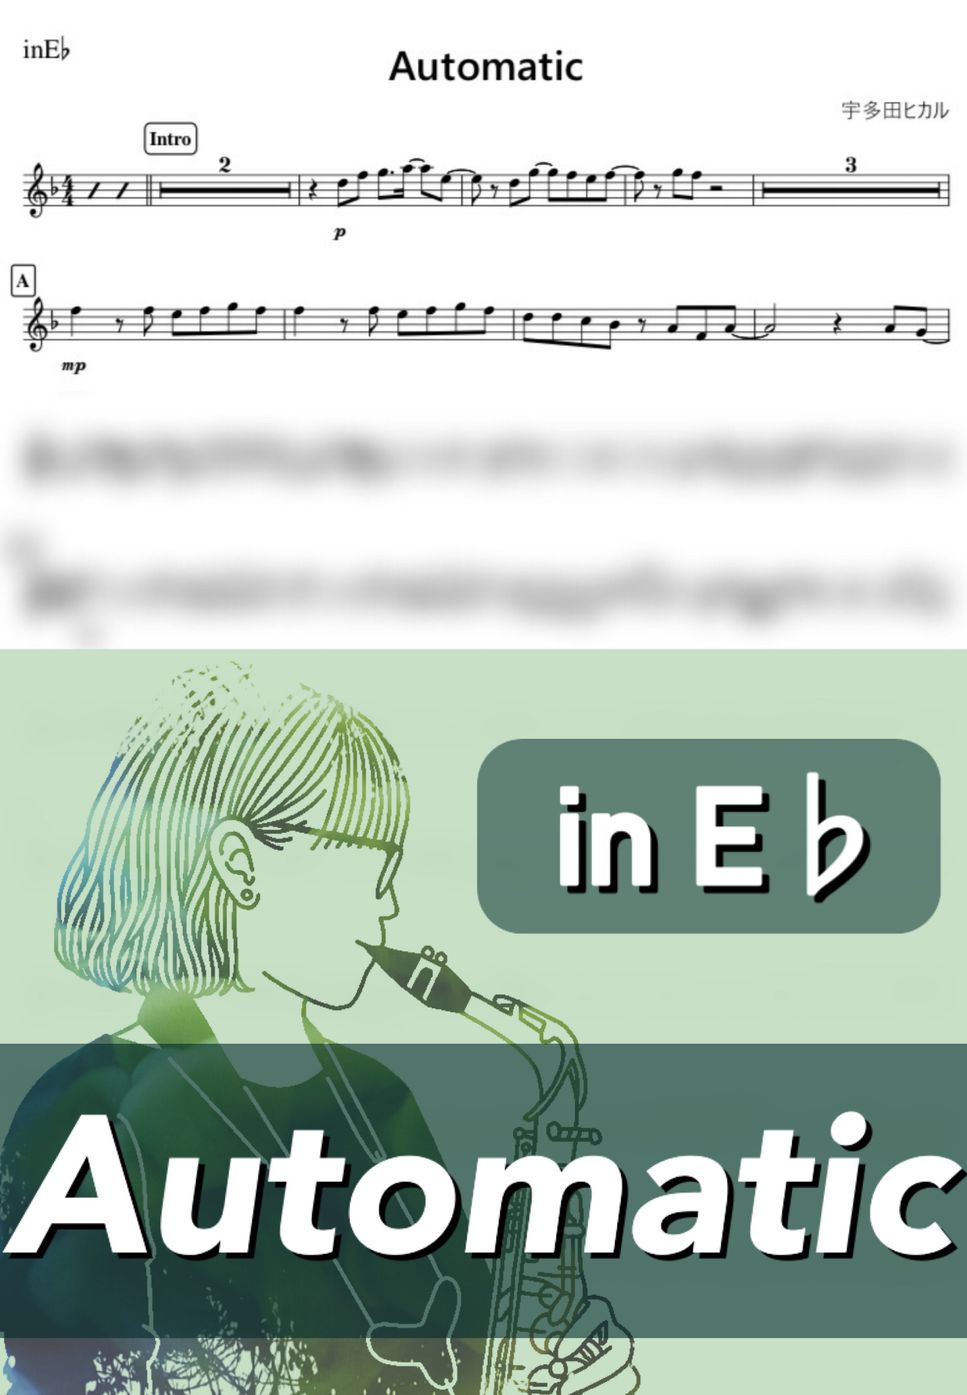 宇多田ヒカル - Automatic (E♭) by kanamusic